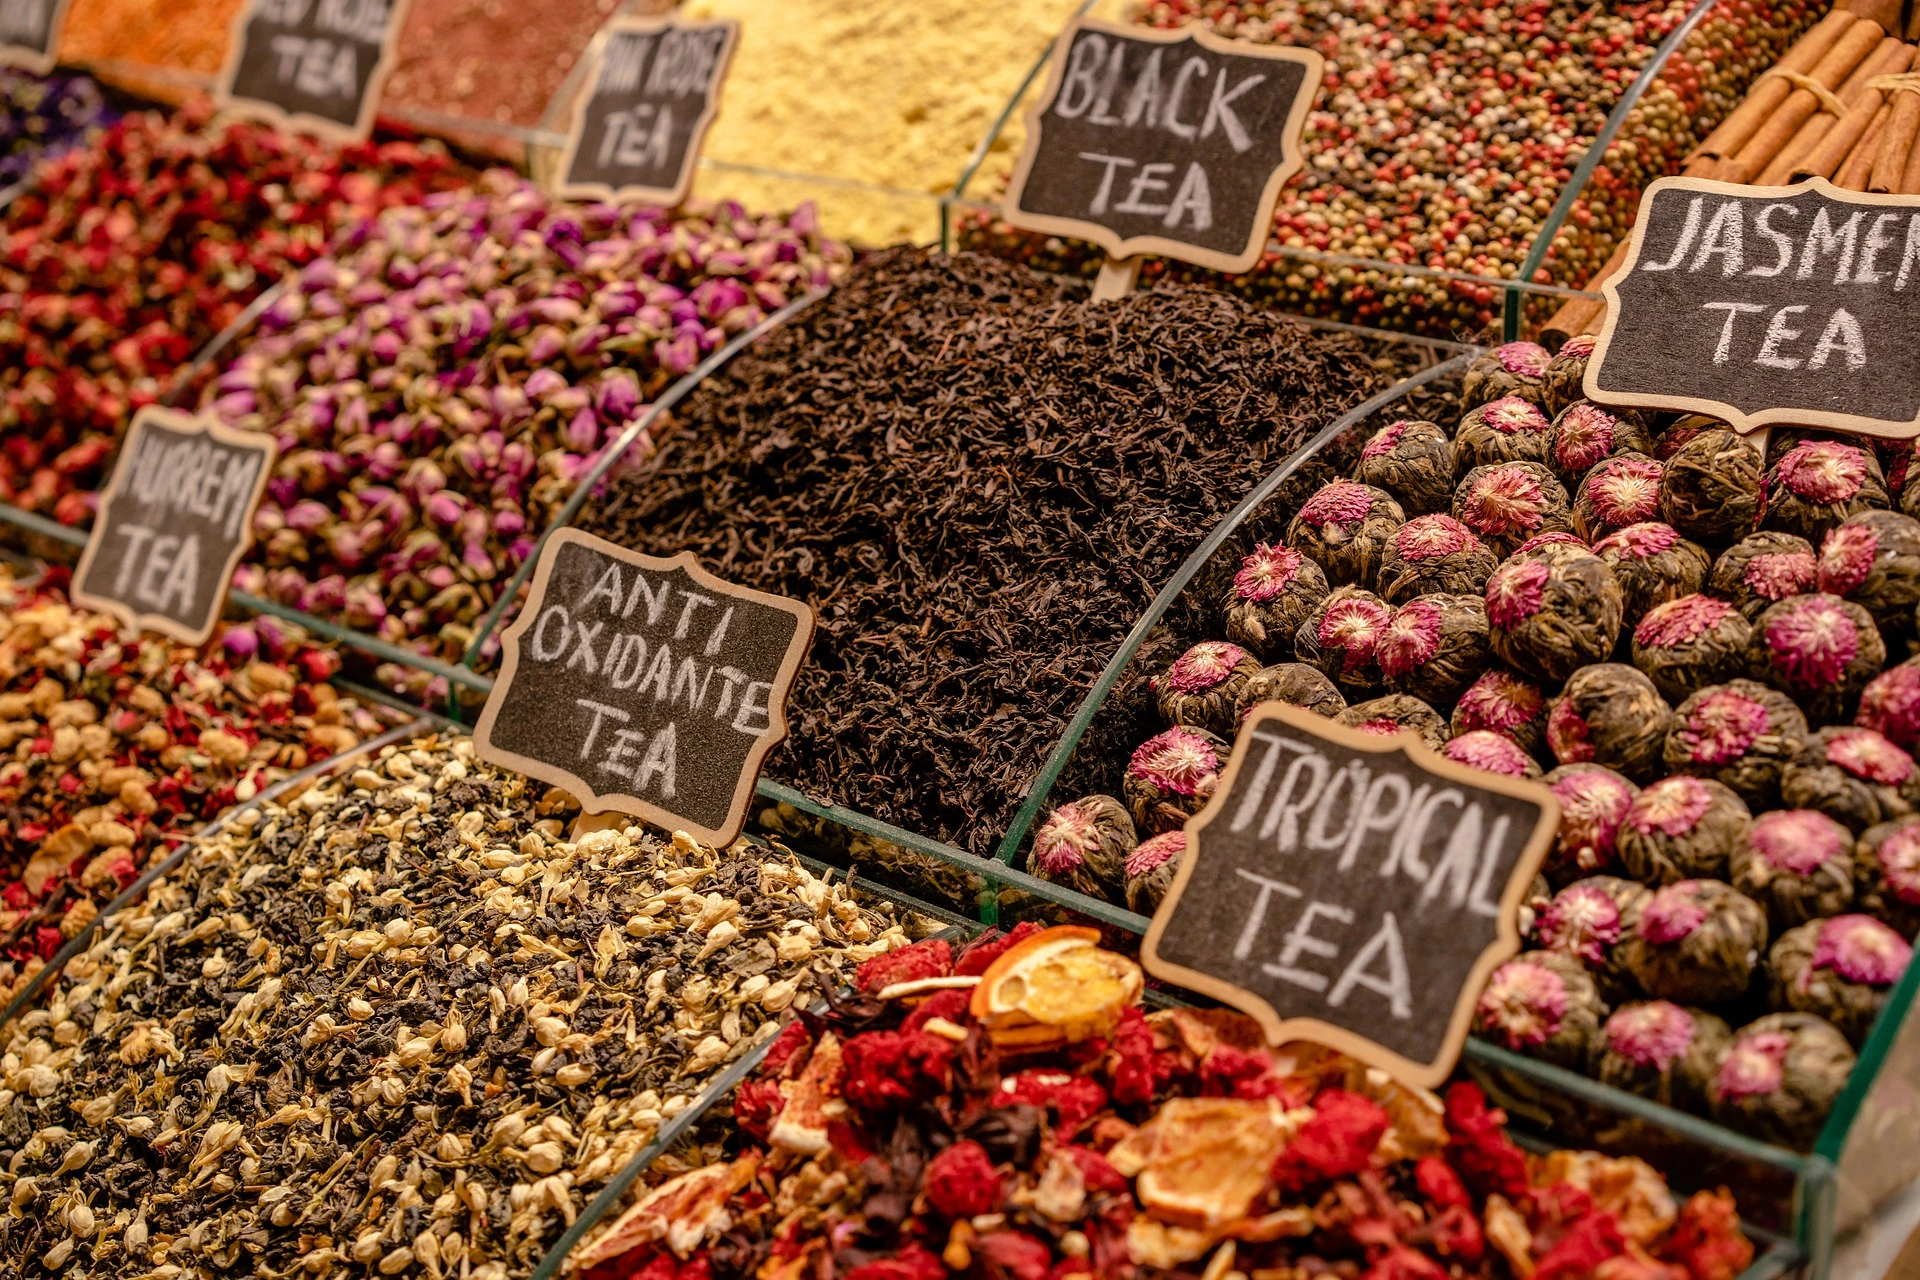 أنواع متنوعة من الشاي الصحية تُعرض في السوق.